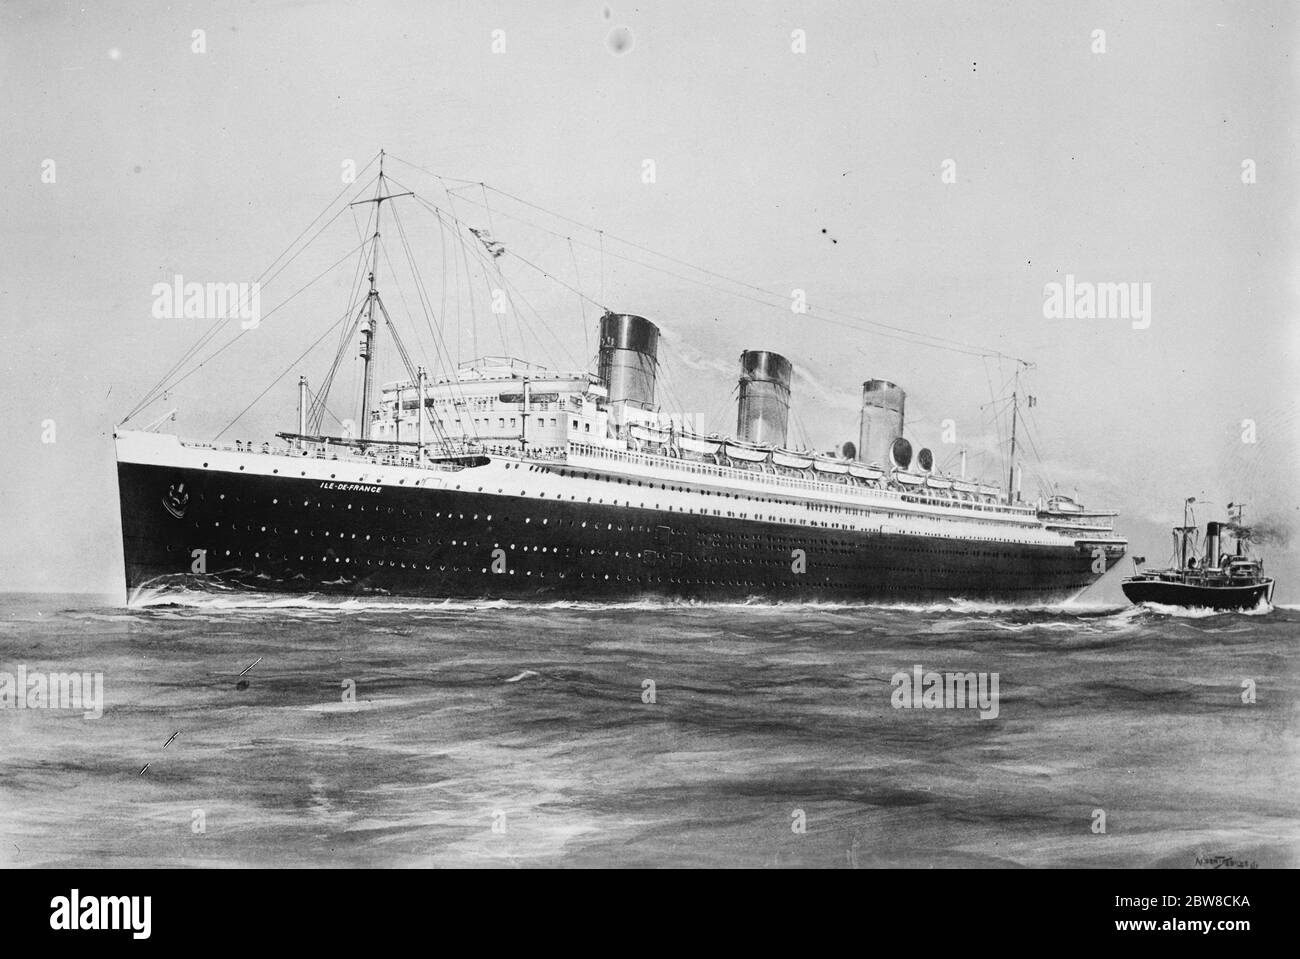 Plus grand dorsal conçu après la guerre . L' Ile de France , de la ligne française , le plus grand navire de l'après-guerre conçu et construit . 31 mai 1927 Banque D'Images